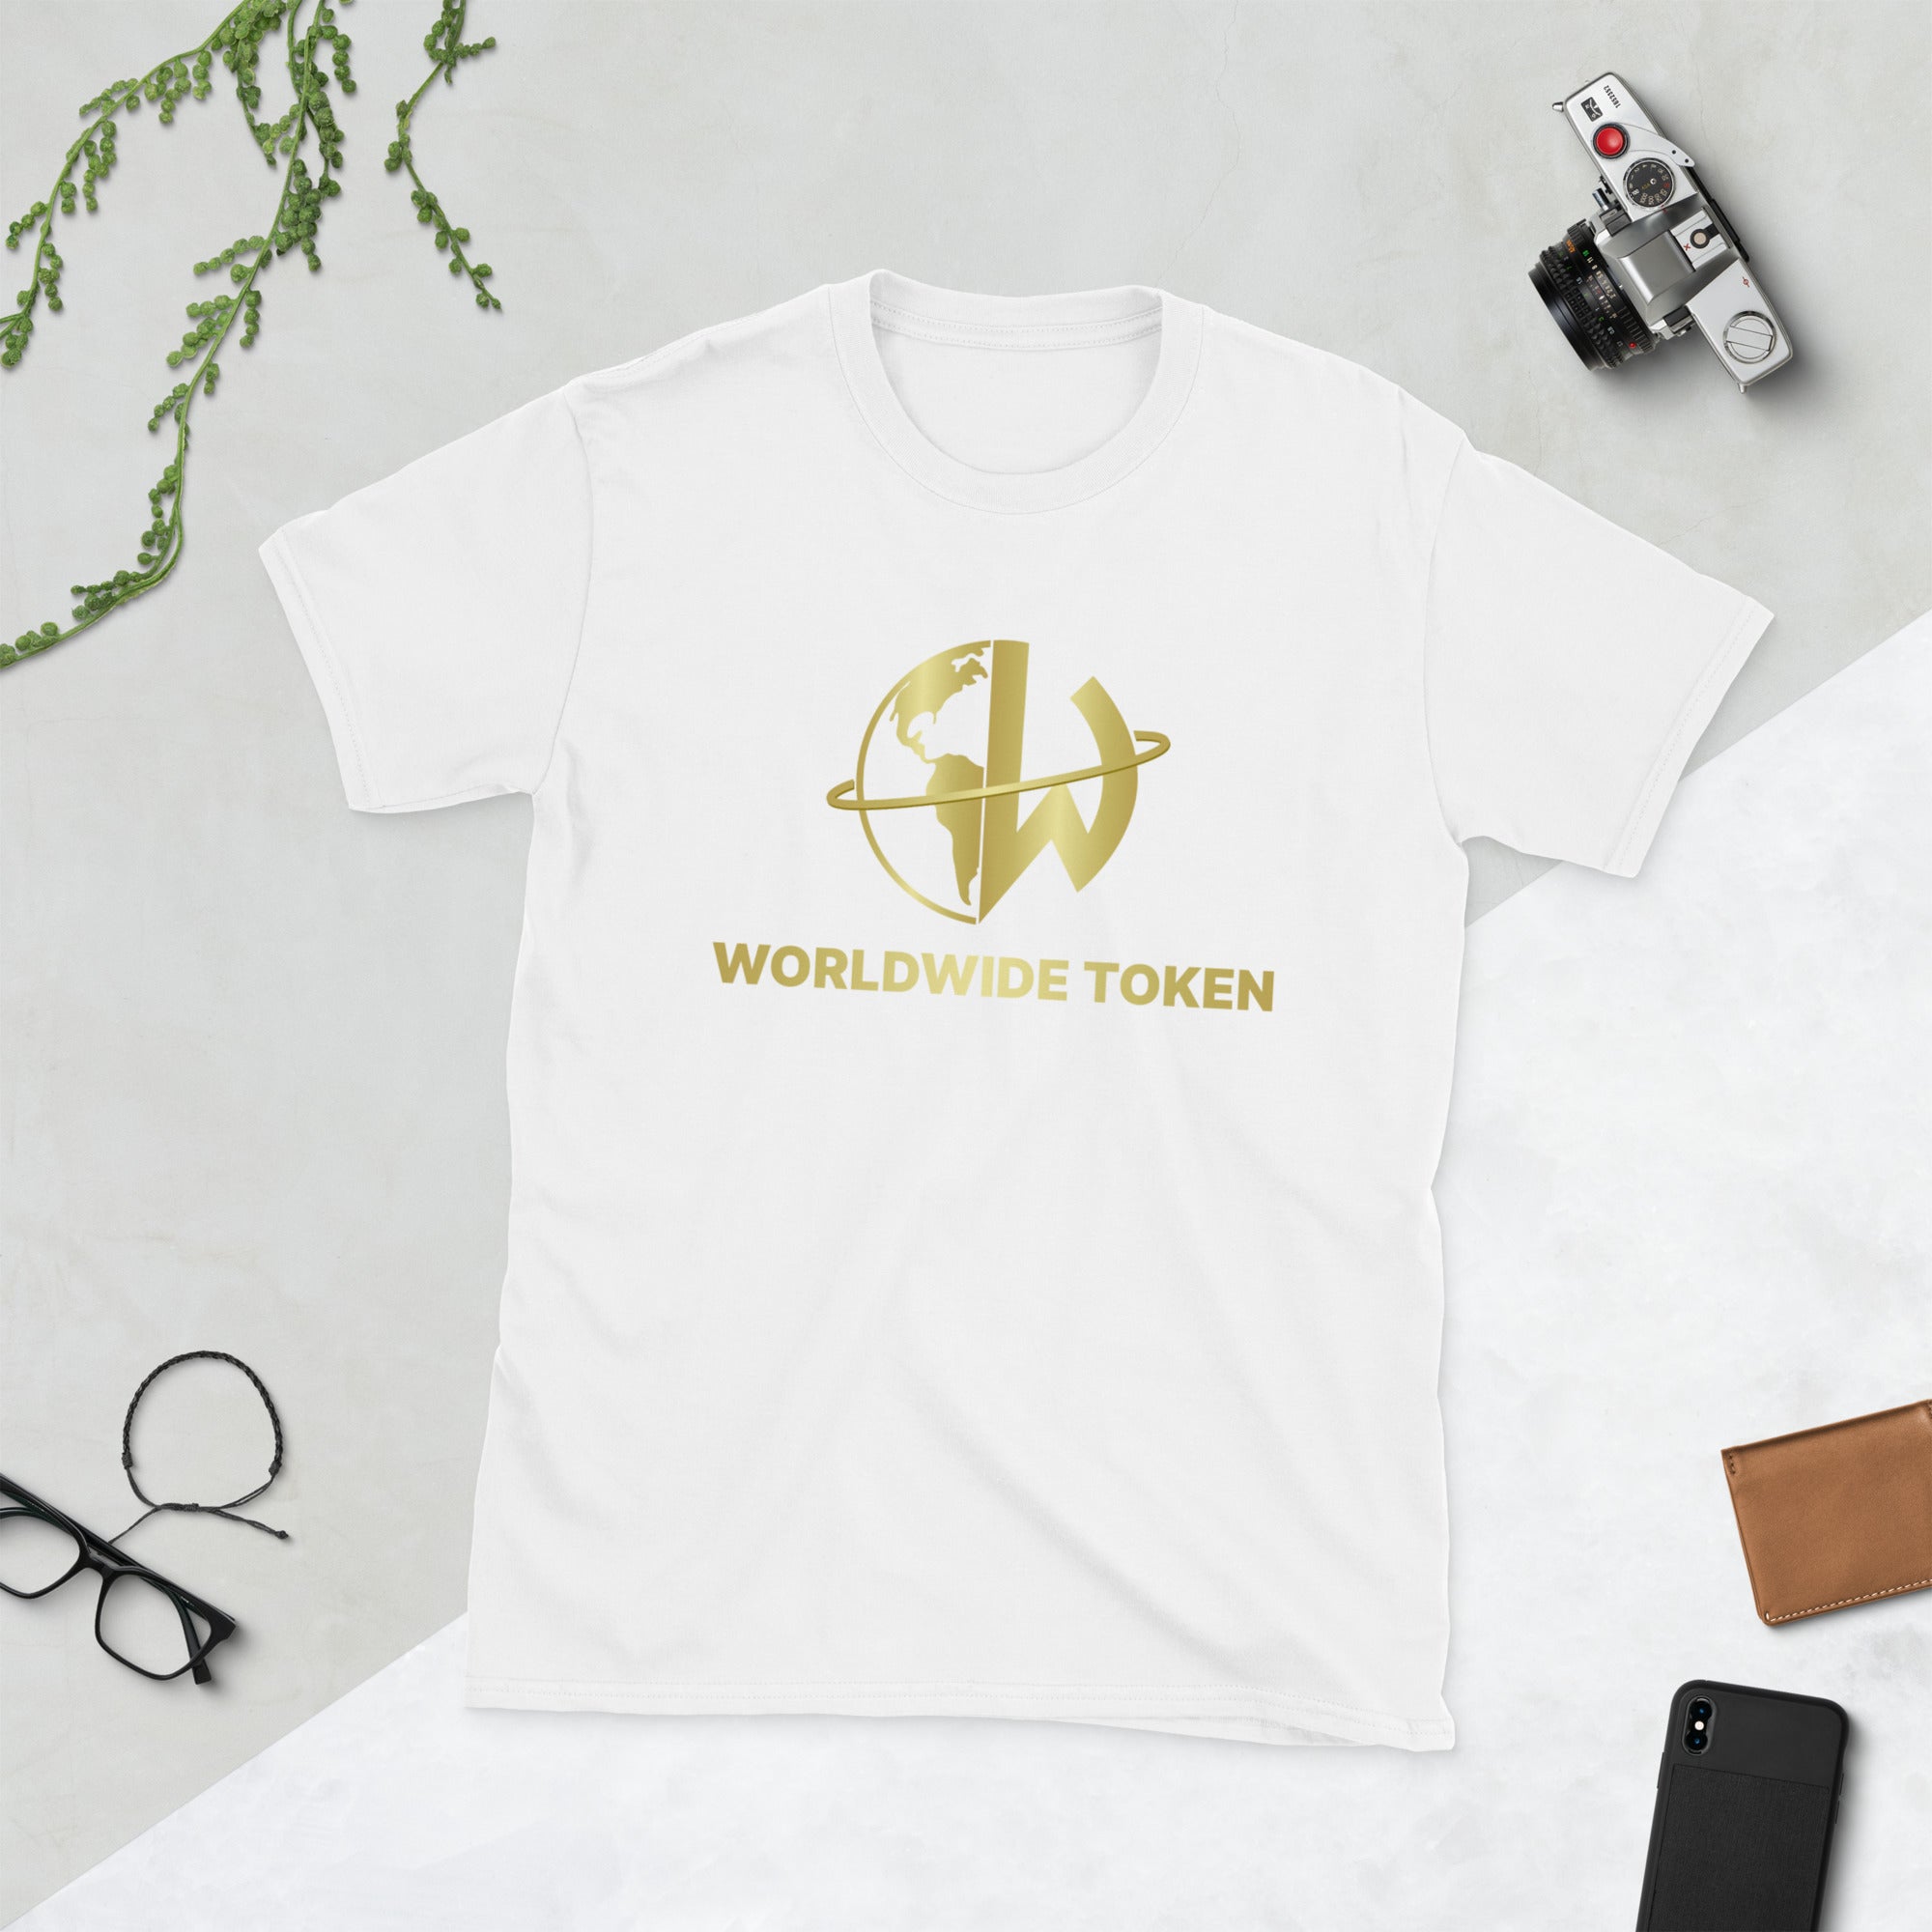 The Worldwide Token Short-Sleeve Unisex T-Shirt